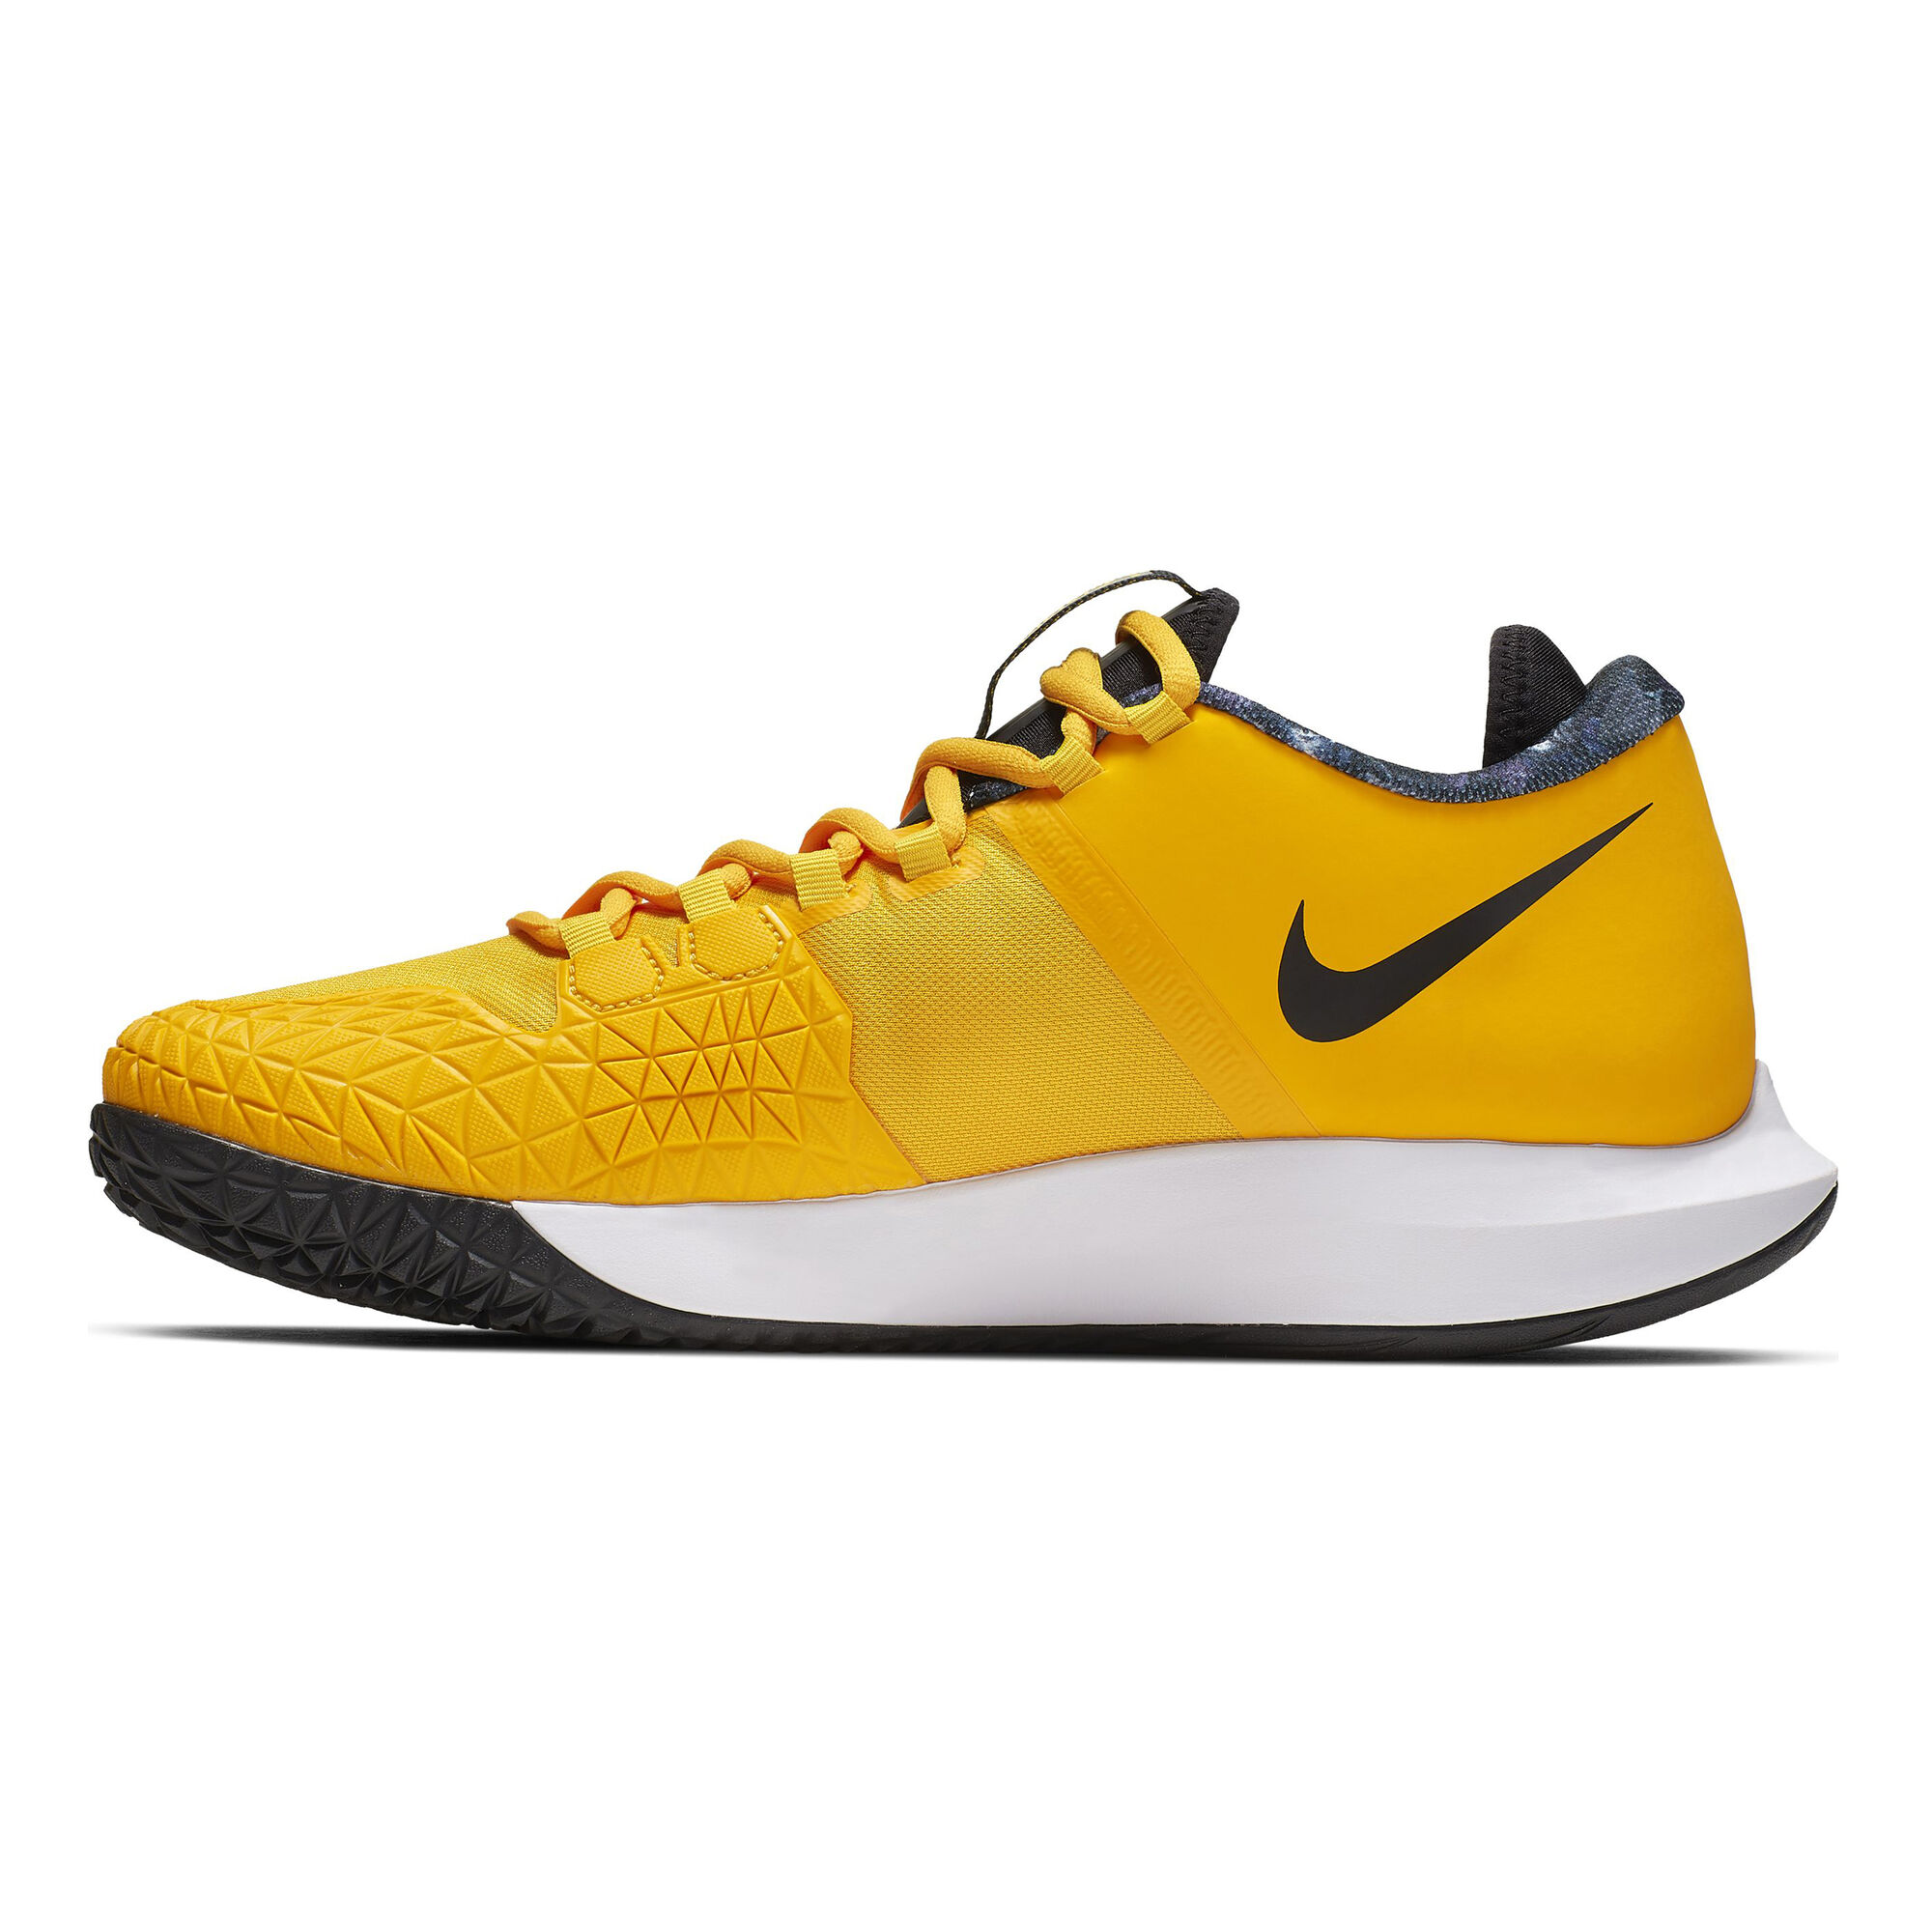 buy Nike Air Zoom Zero All Court Shoe Men - Golden Yellow, Black online ...